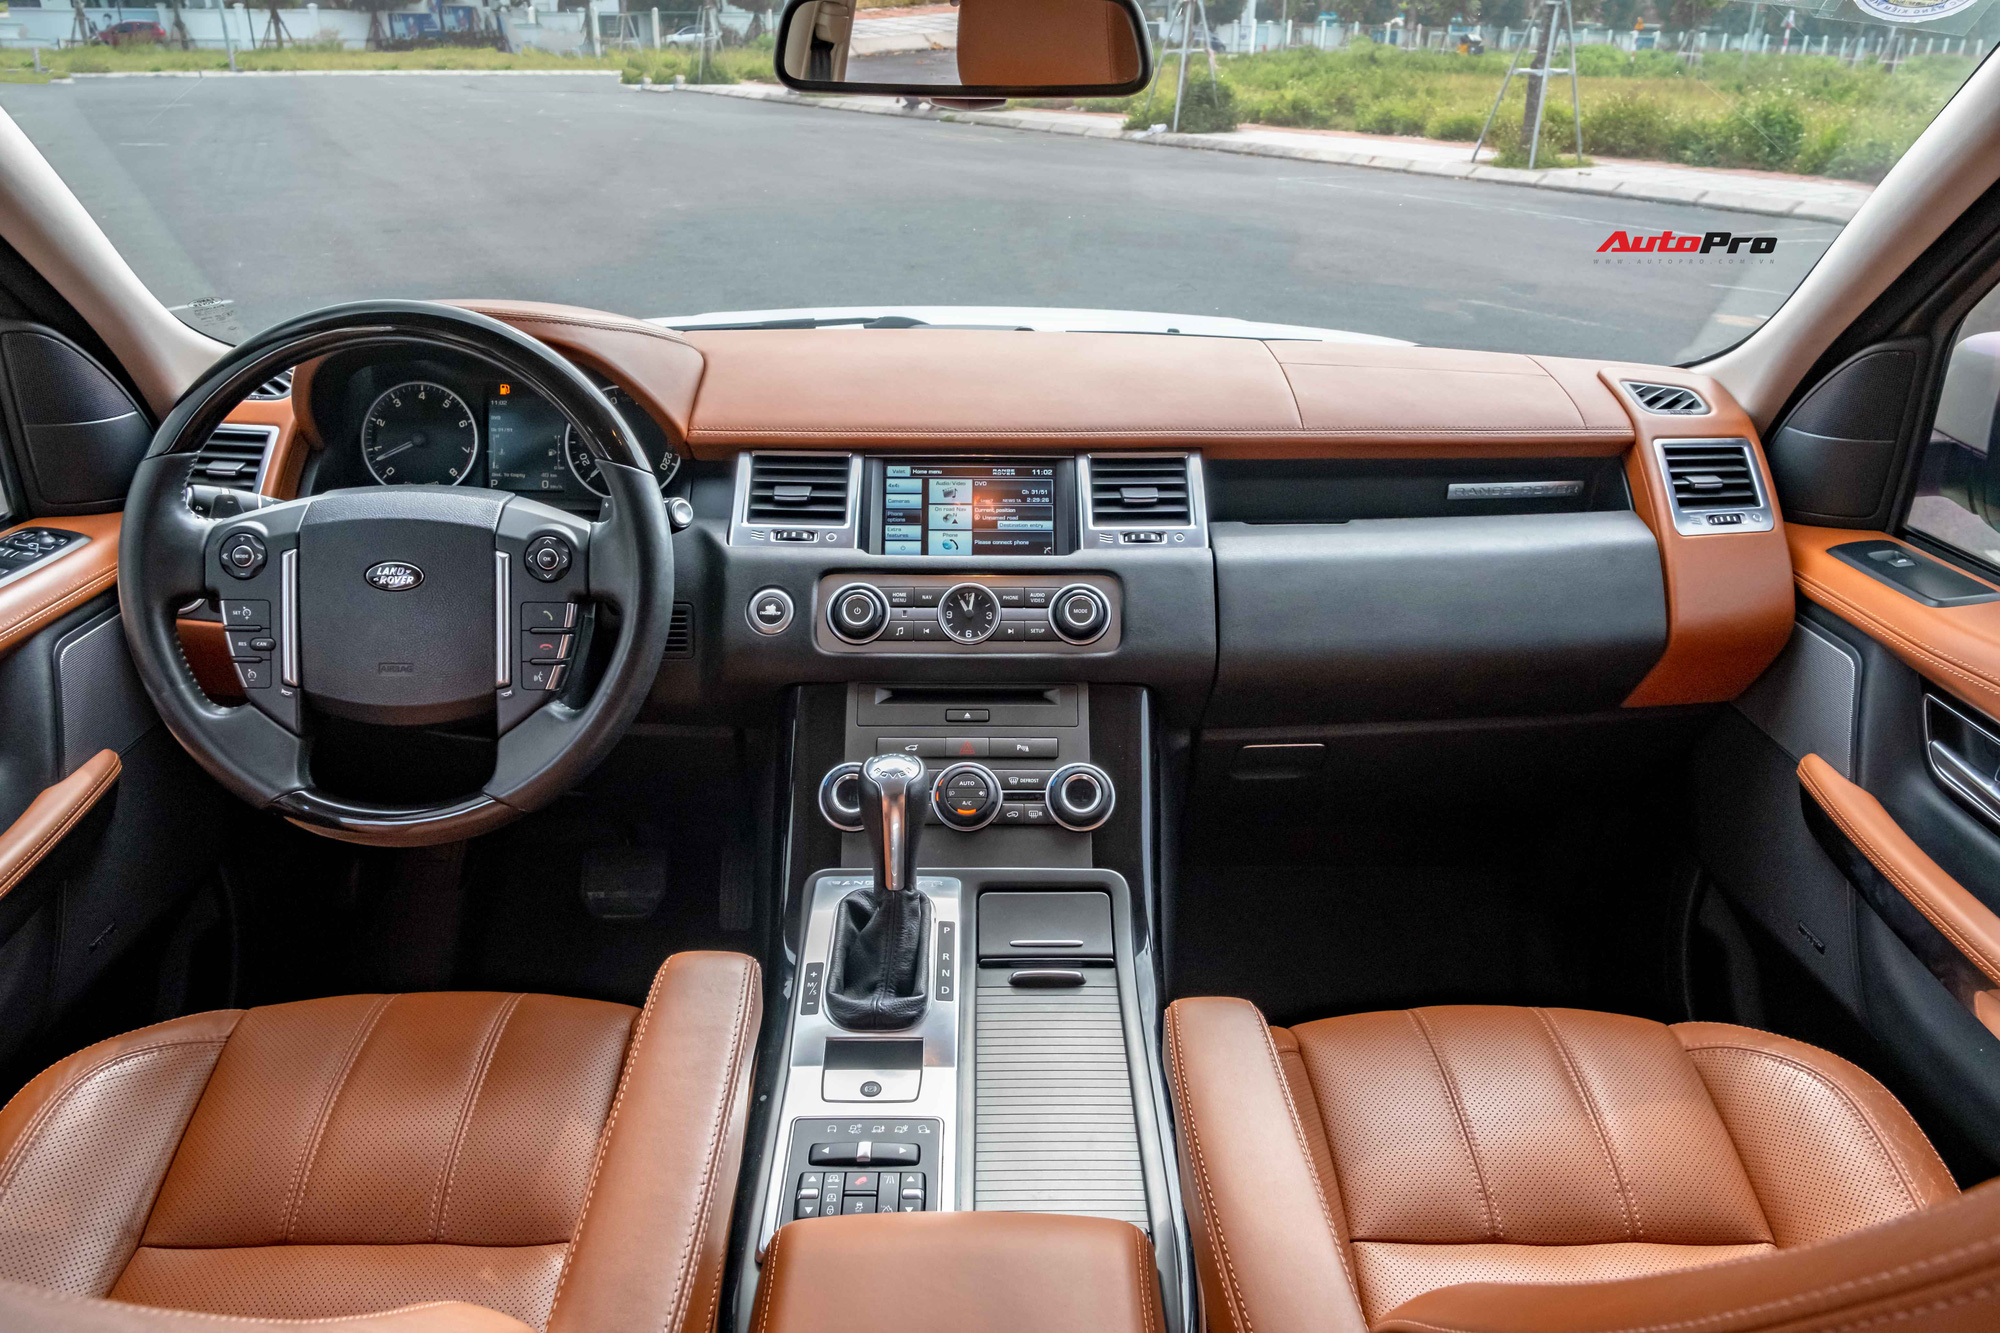 Bán Range Rover Sport biển 699.99 giá 1,8 tỷ, chủ nhân tiết lộ: Tiền biển đủ mua Kia Moring, nhiều đại gia hỏi mua để trưng bày - Ảnh 4.